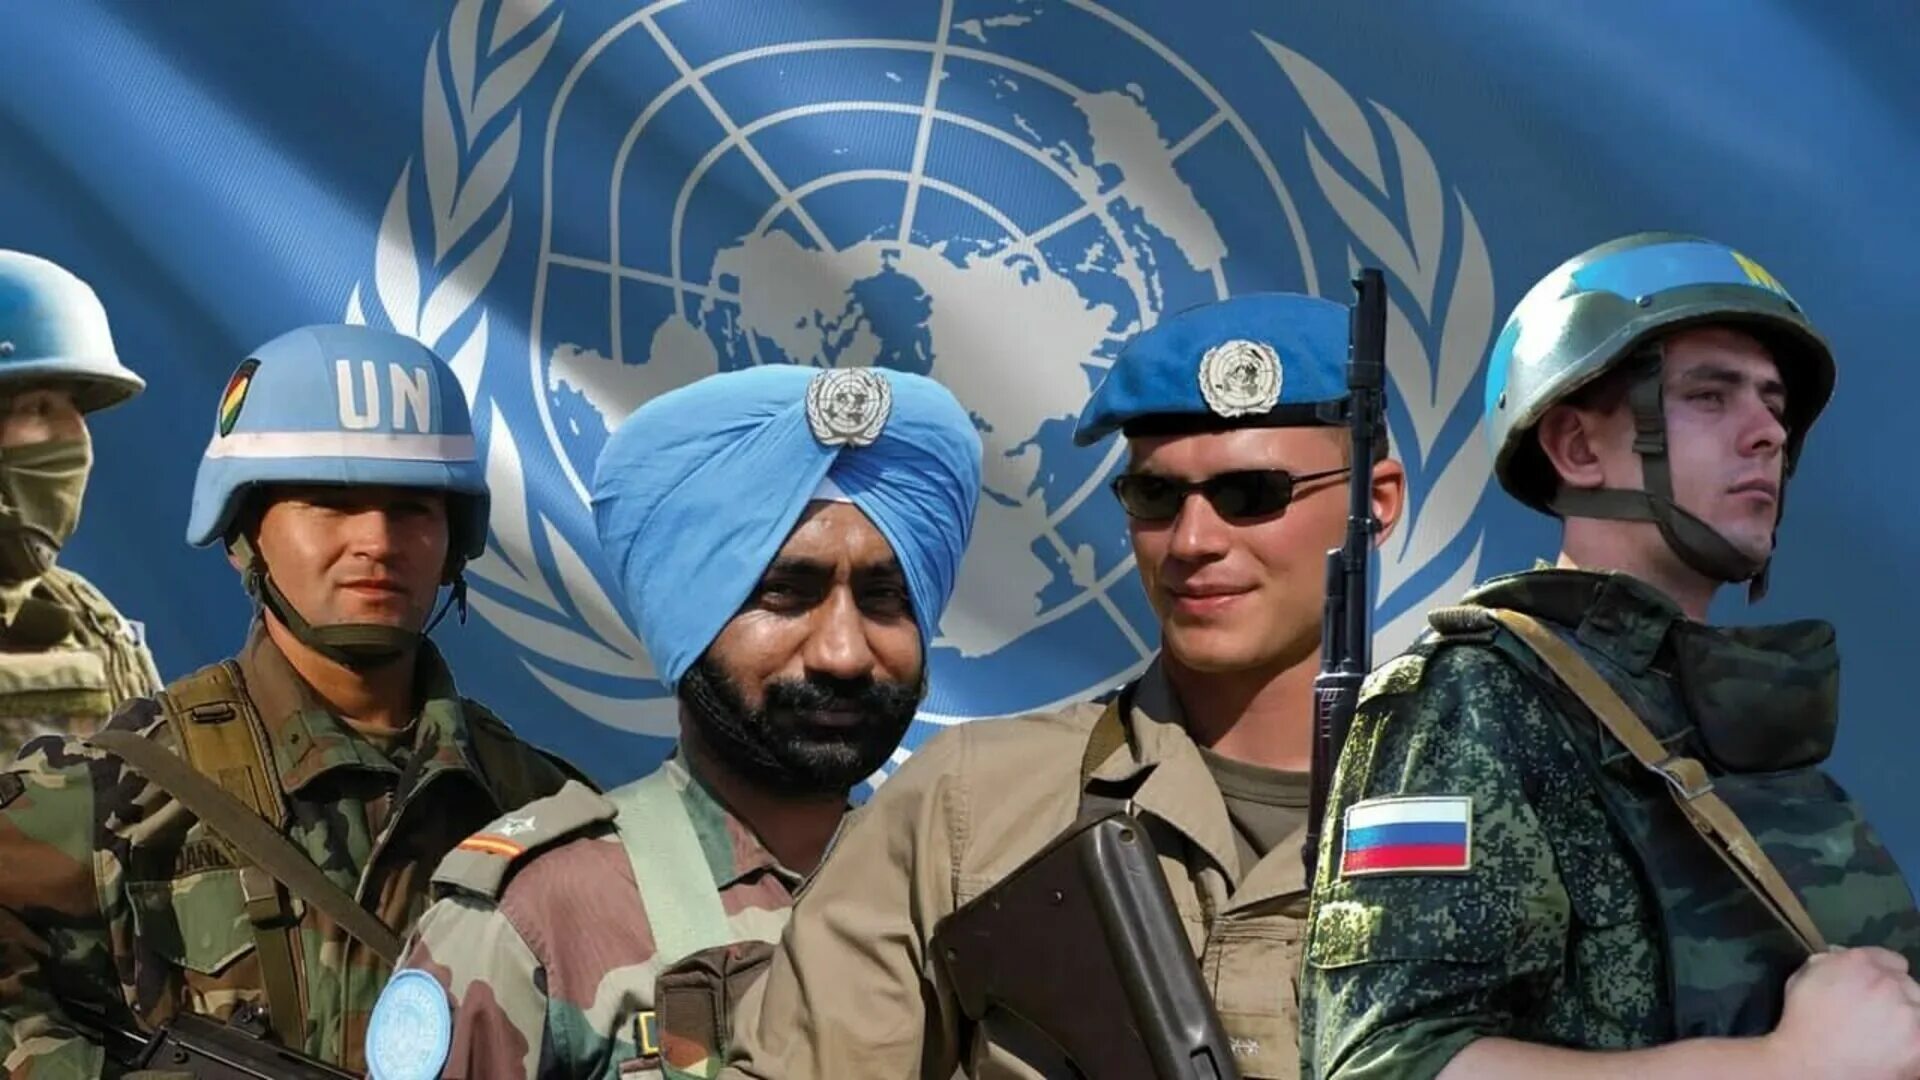 Миротворческие войска ООН. Миротворцы ООН. Миротворческие силы ООН России. Миротворческий контингент организации Объединенных наций (ООН).